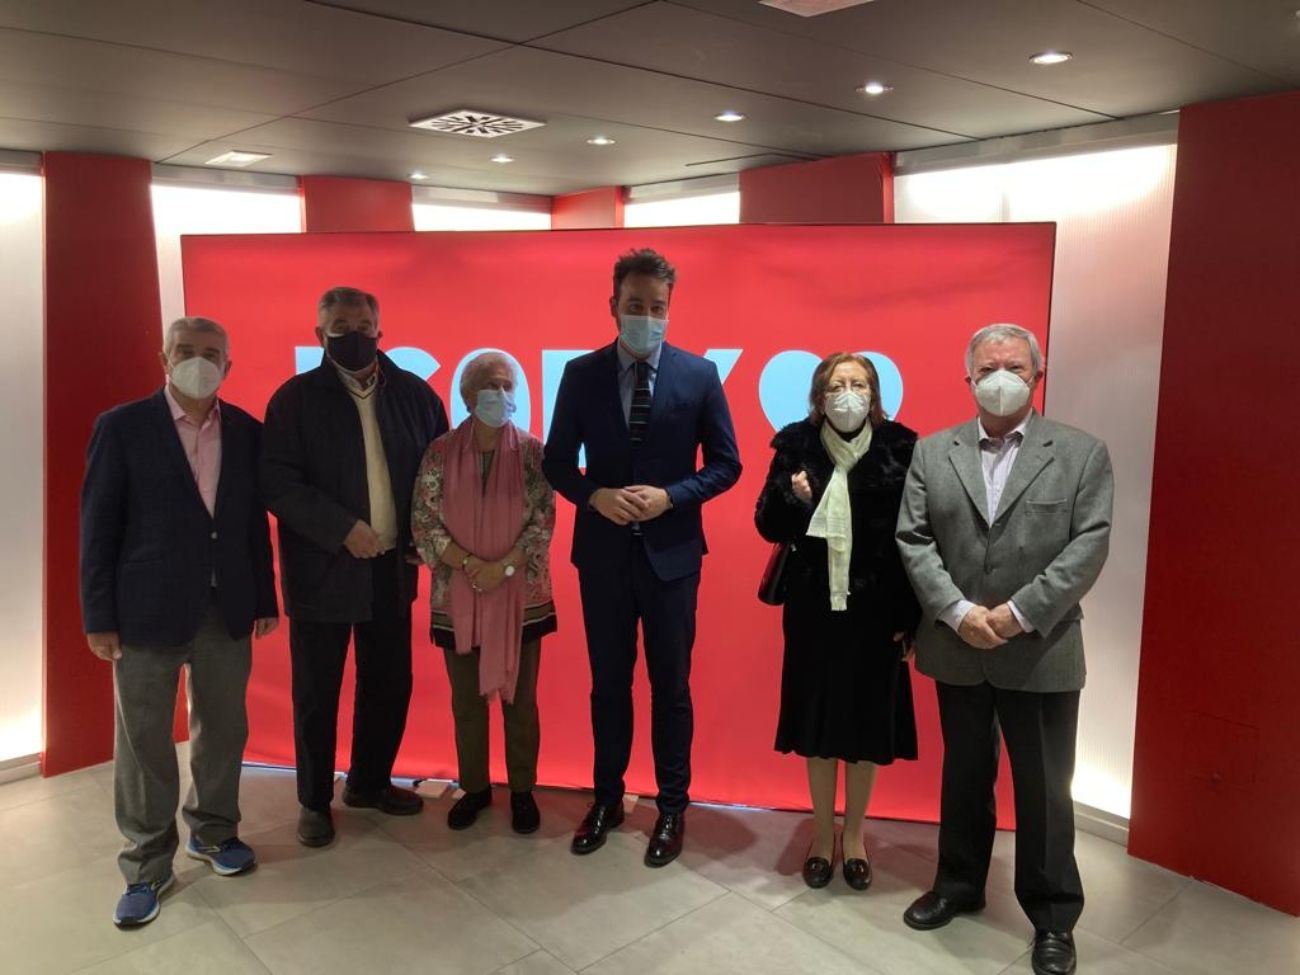 La PMP presenta al PSOE sus prioridades estratégicas por los derechos de los mayores y pensionistas